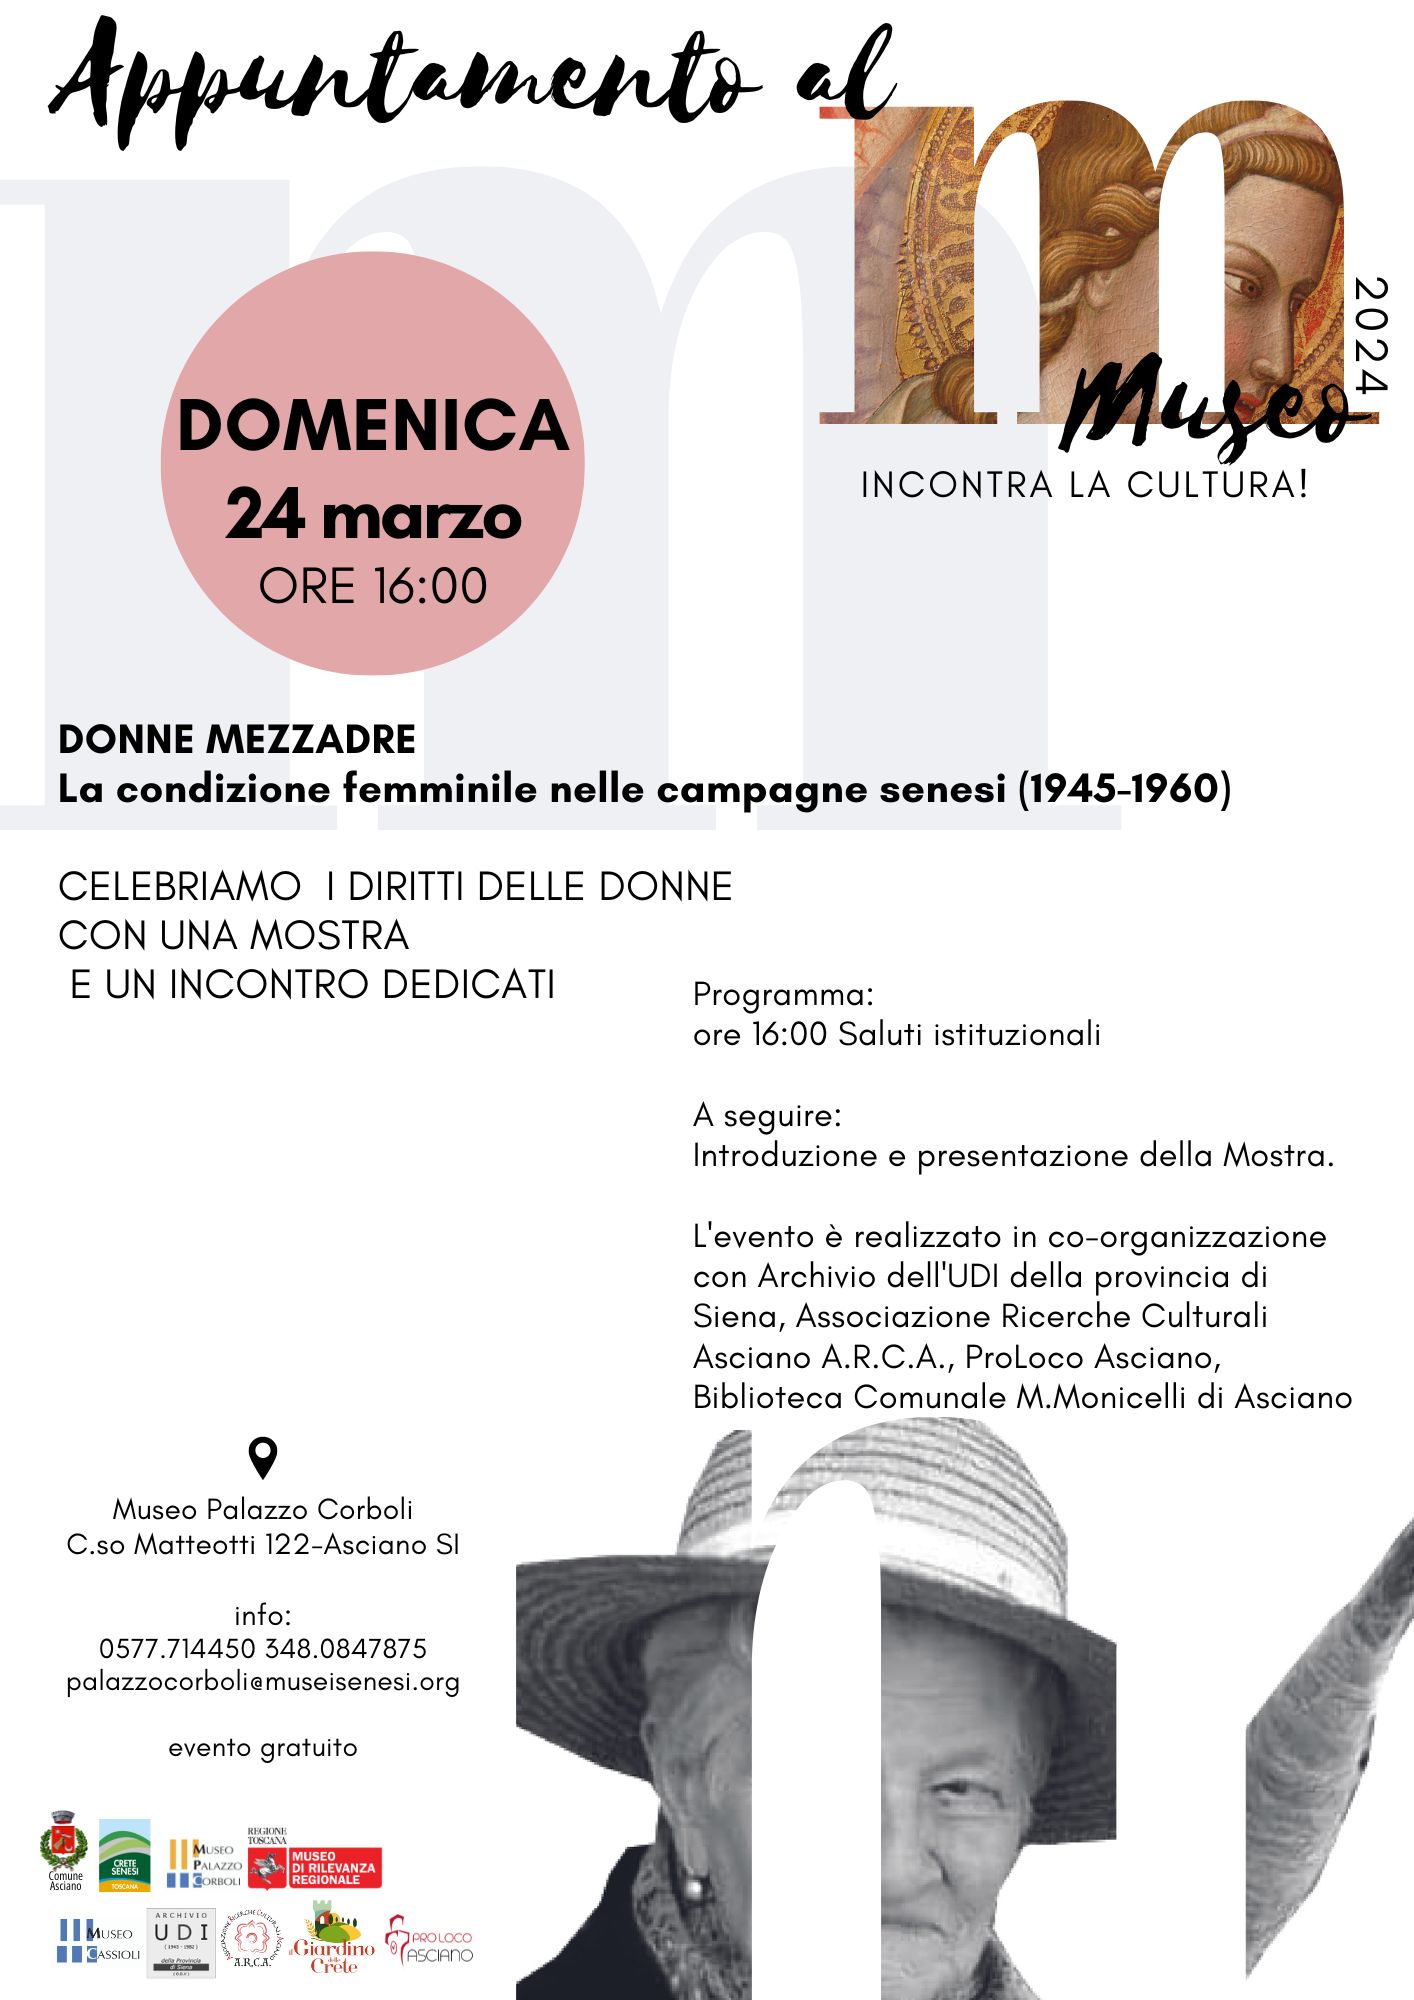 “DONNE MEZZADRE” la condizione femminile nelle campagne senesi (1945-1960) – Palazzo Corboli – domenica 24 marzo – ore 16:00